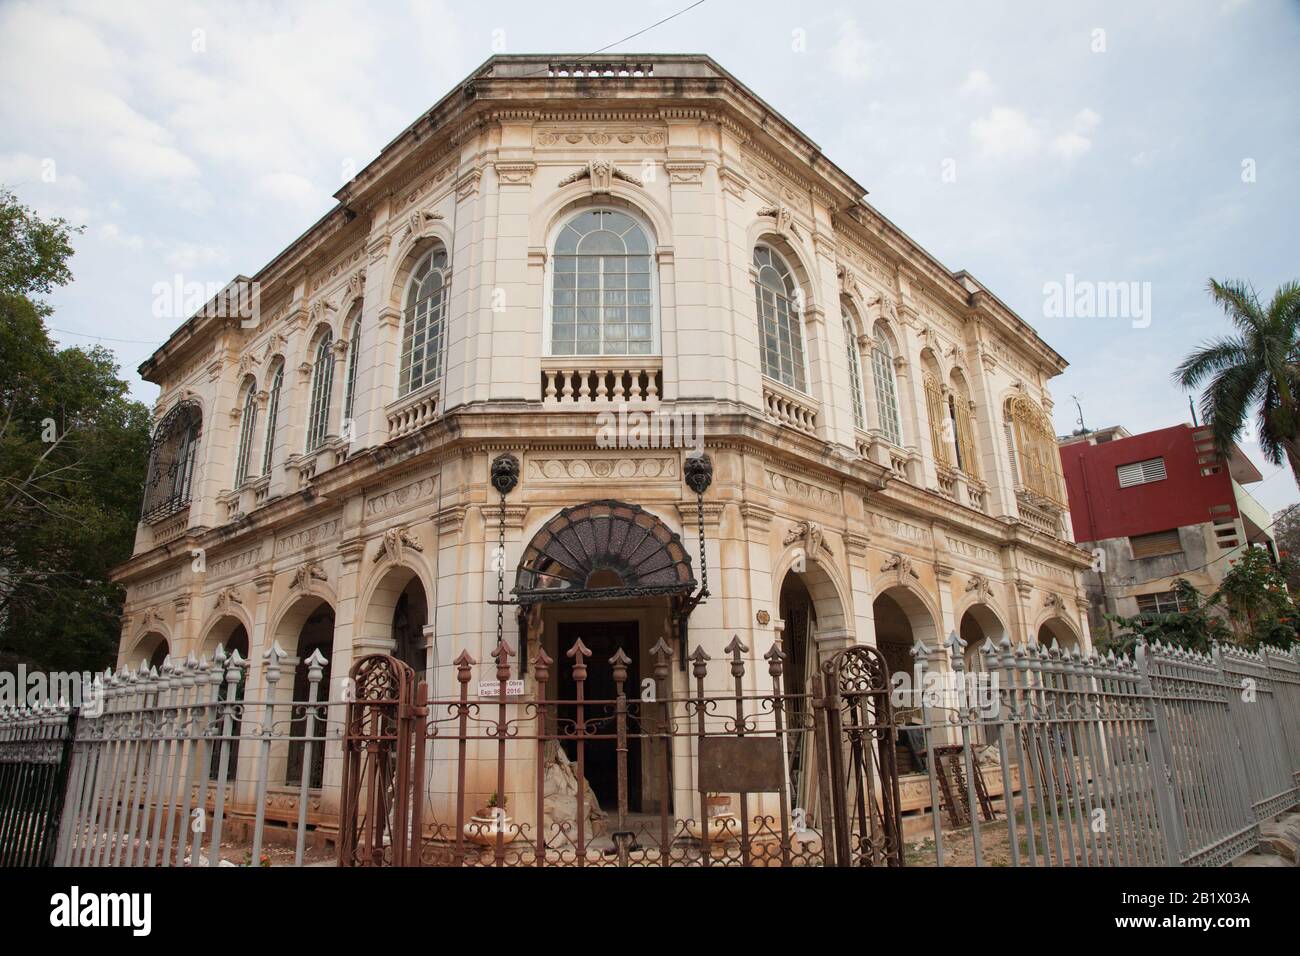 Un bellissimo edificio storico a l'Avana, Cuba, è recintato mentre è in fase di restauro e riparazione. Foto Stock